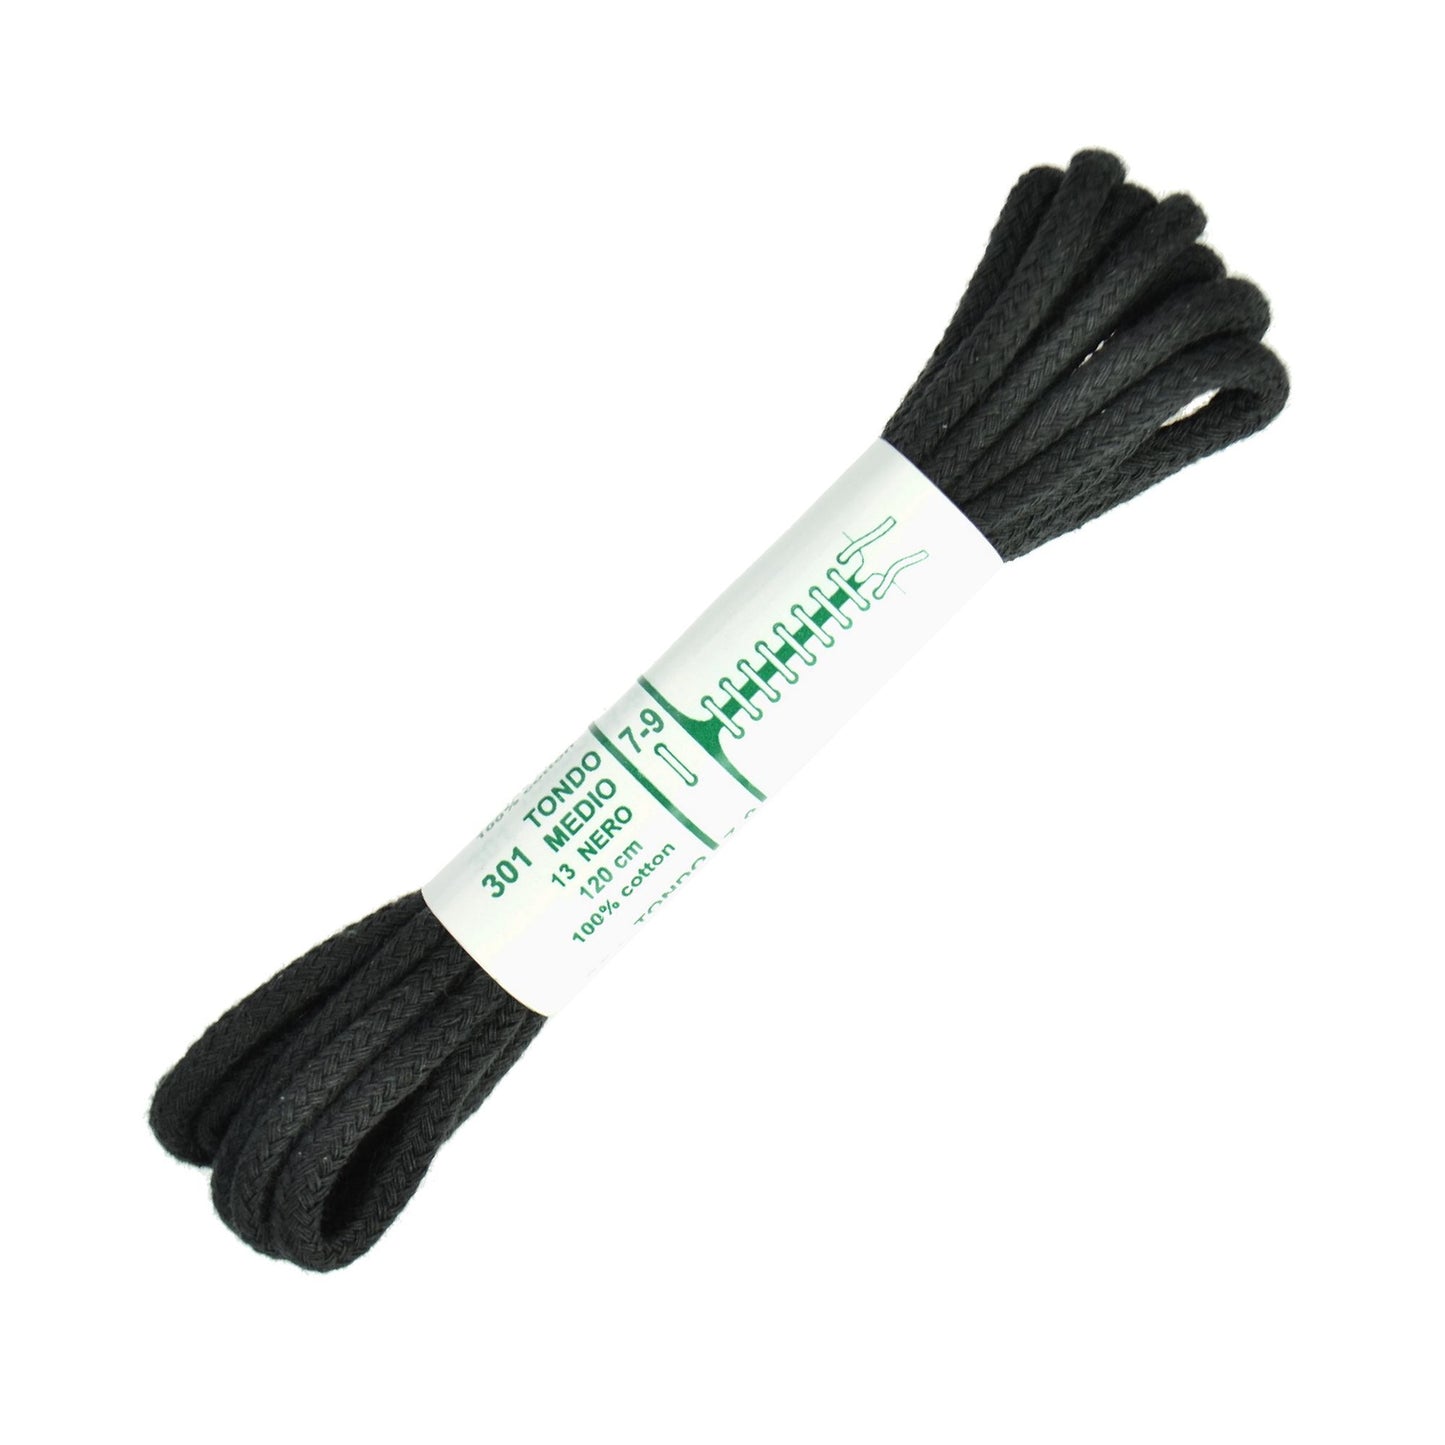 120cm Premium Cord Shoe Laces - Black 4mm